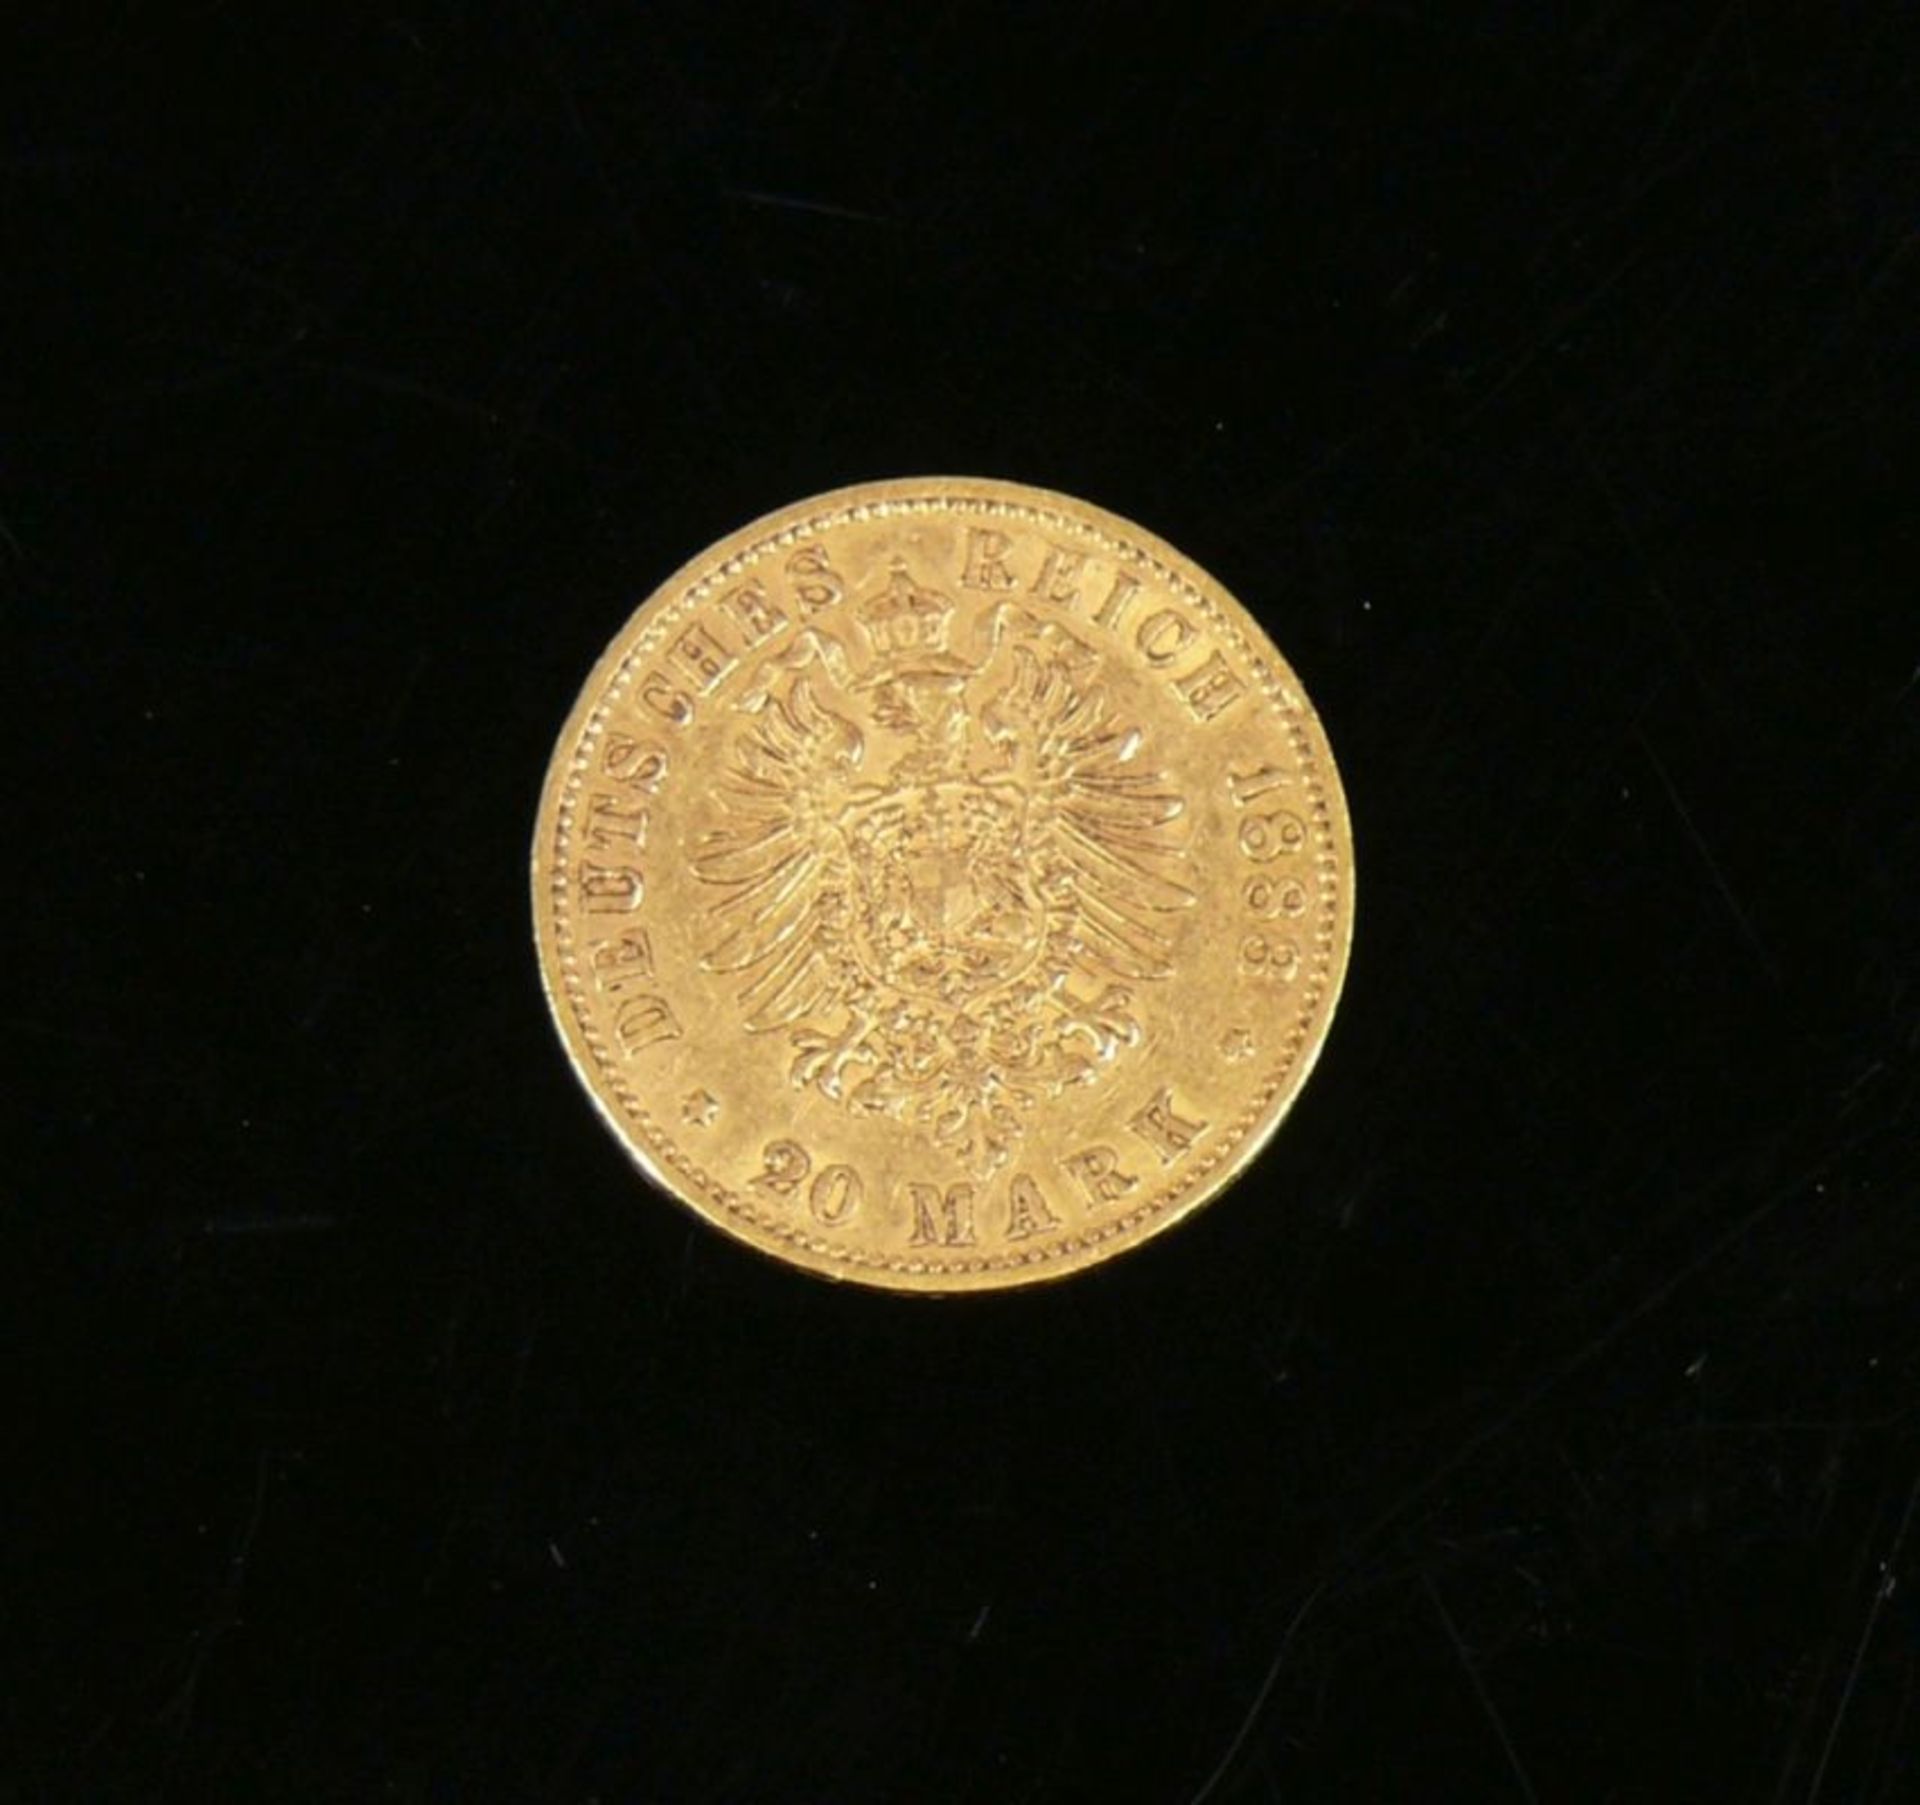 Goldmünze20 Mark; 1883, Wilhelm Deutscher Kaiser König von Preussen A; ss/vz - Bild 2 aus 2